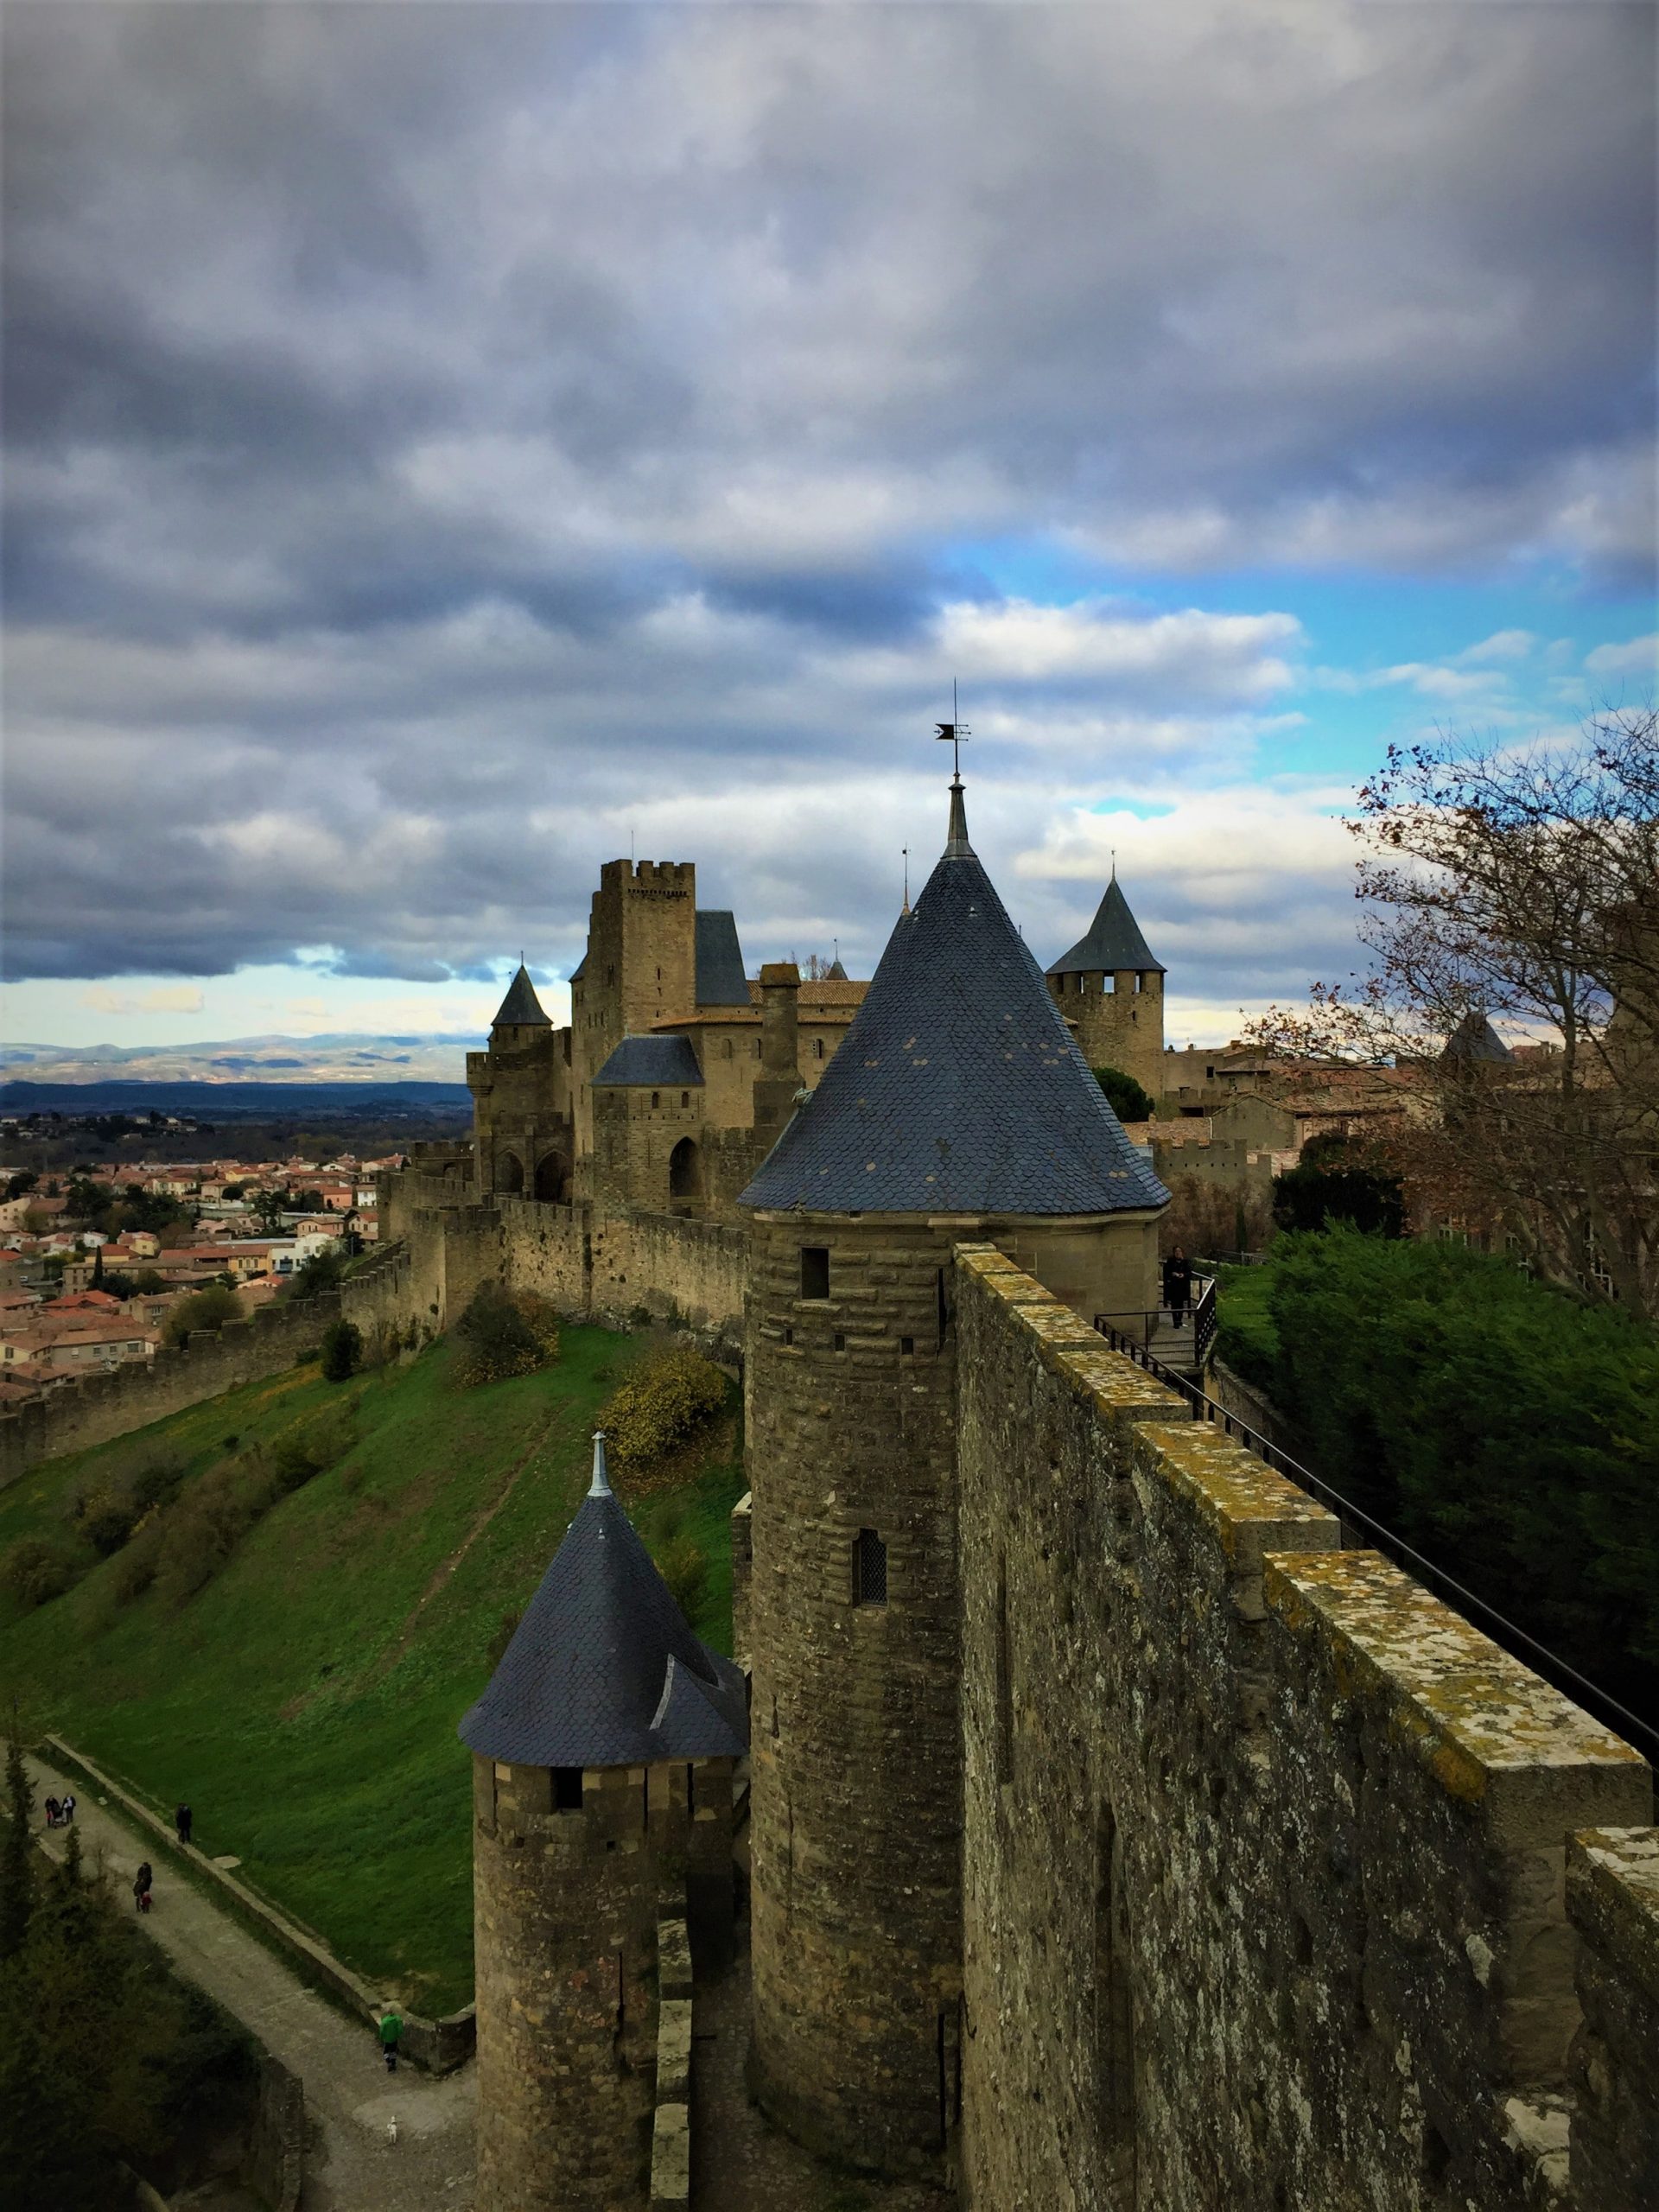 Cite de carcassonne